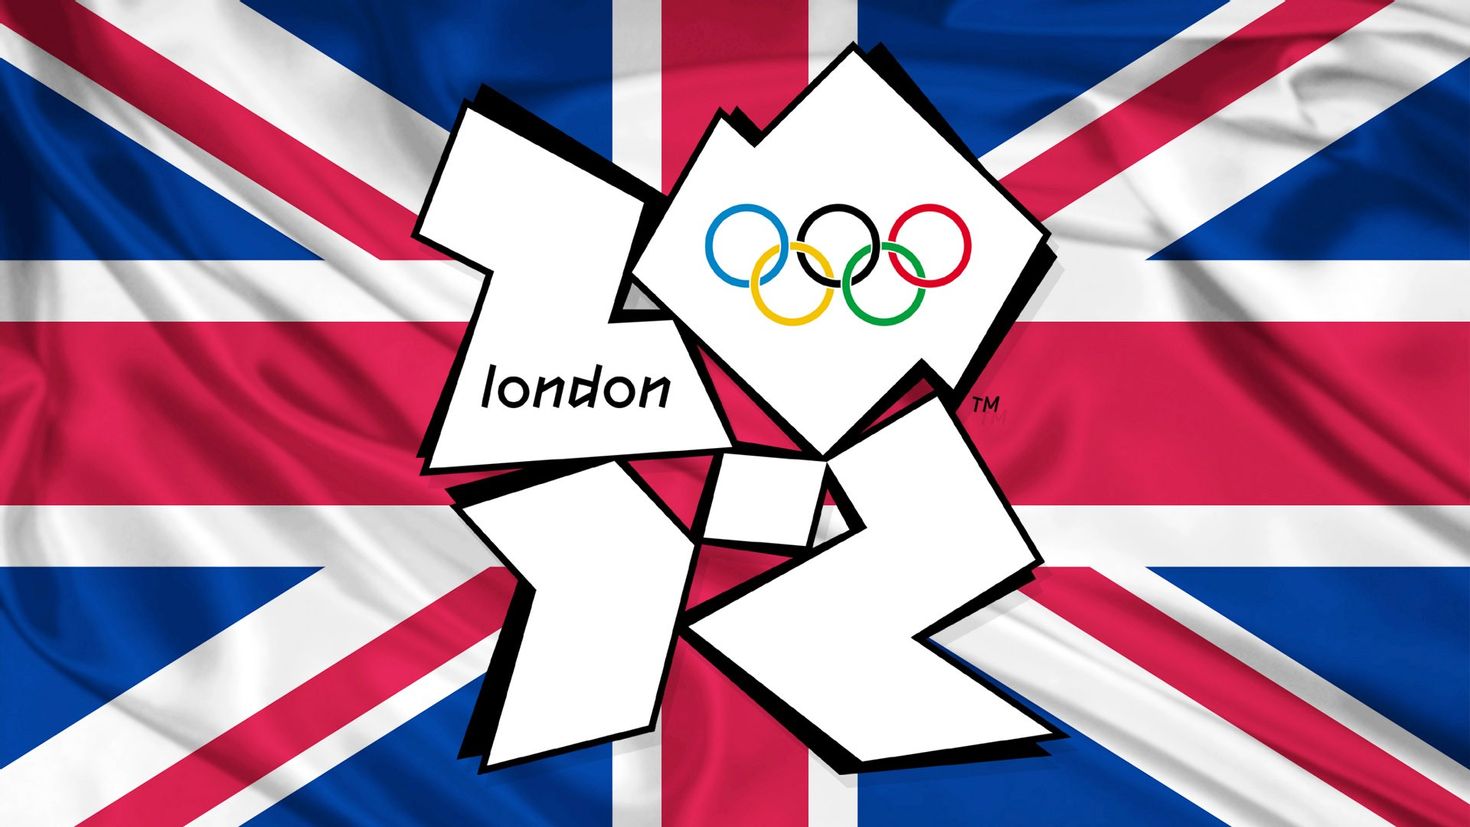 Ои 2012. Олимпийские игры в Лондоне. Лондон 2012. Олимпийские игры 2012 года в Лондоне.